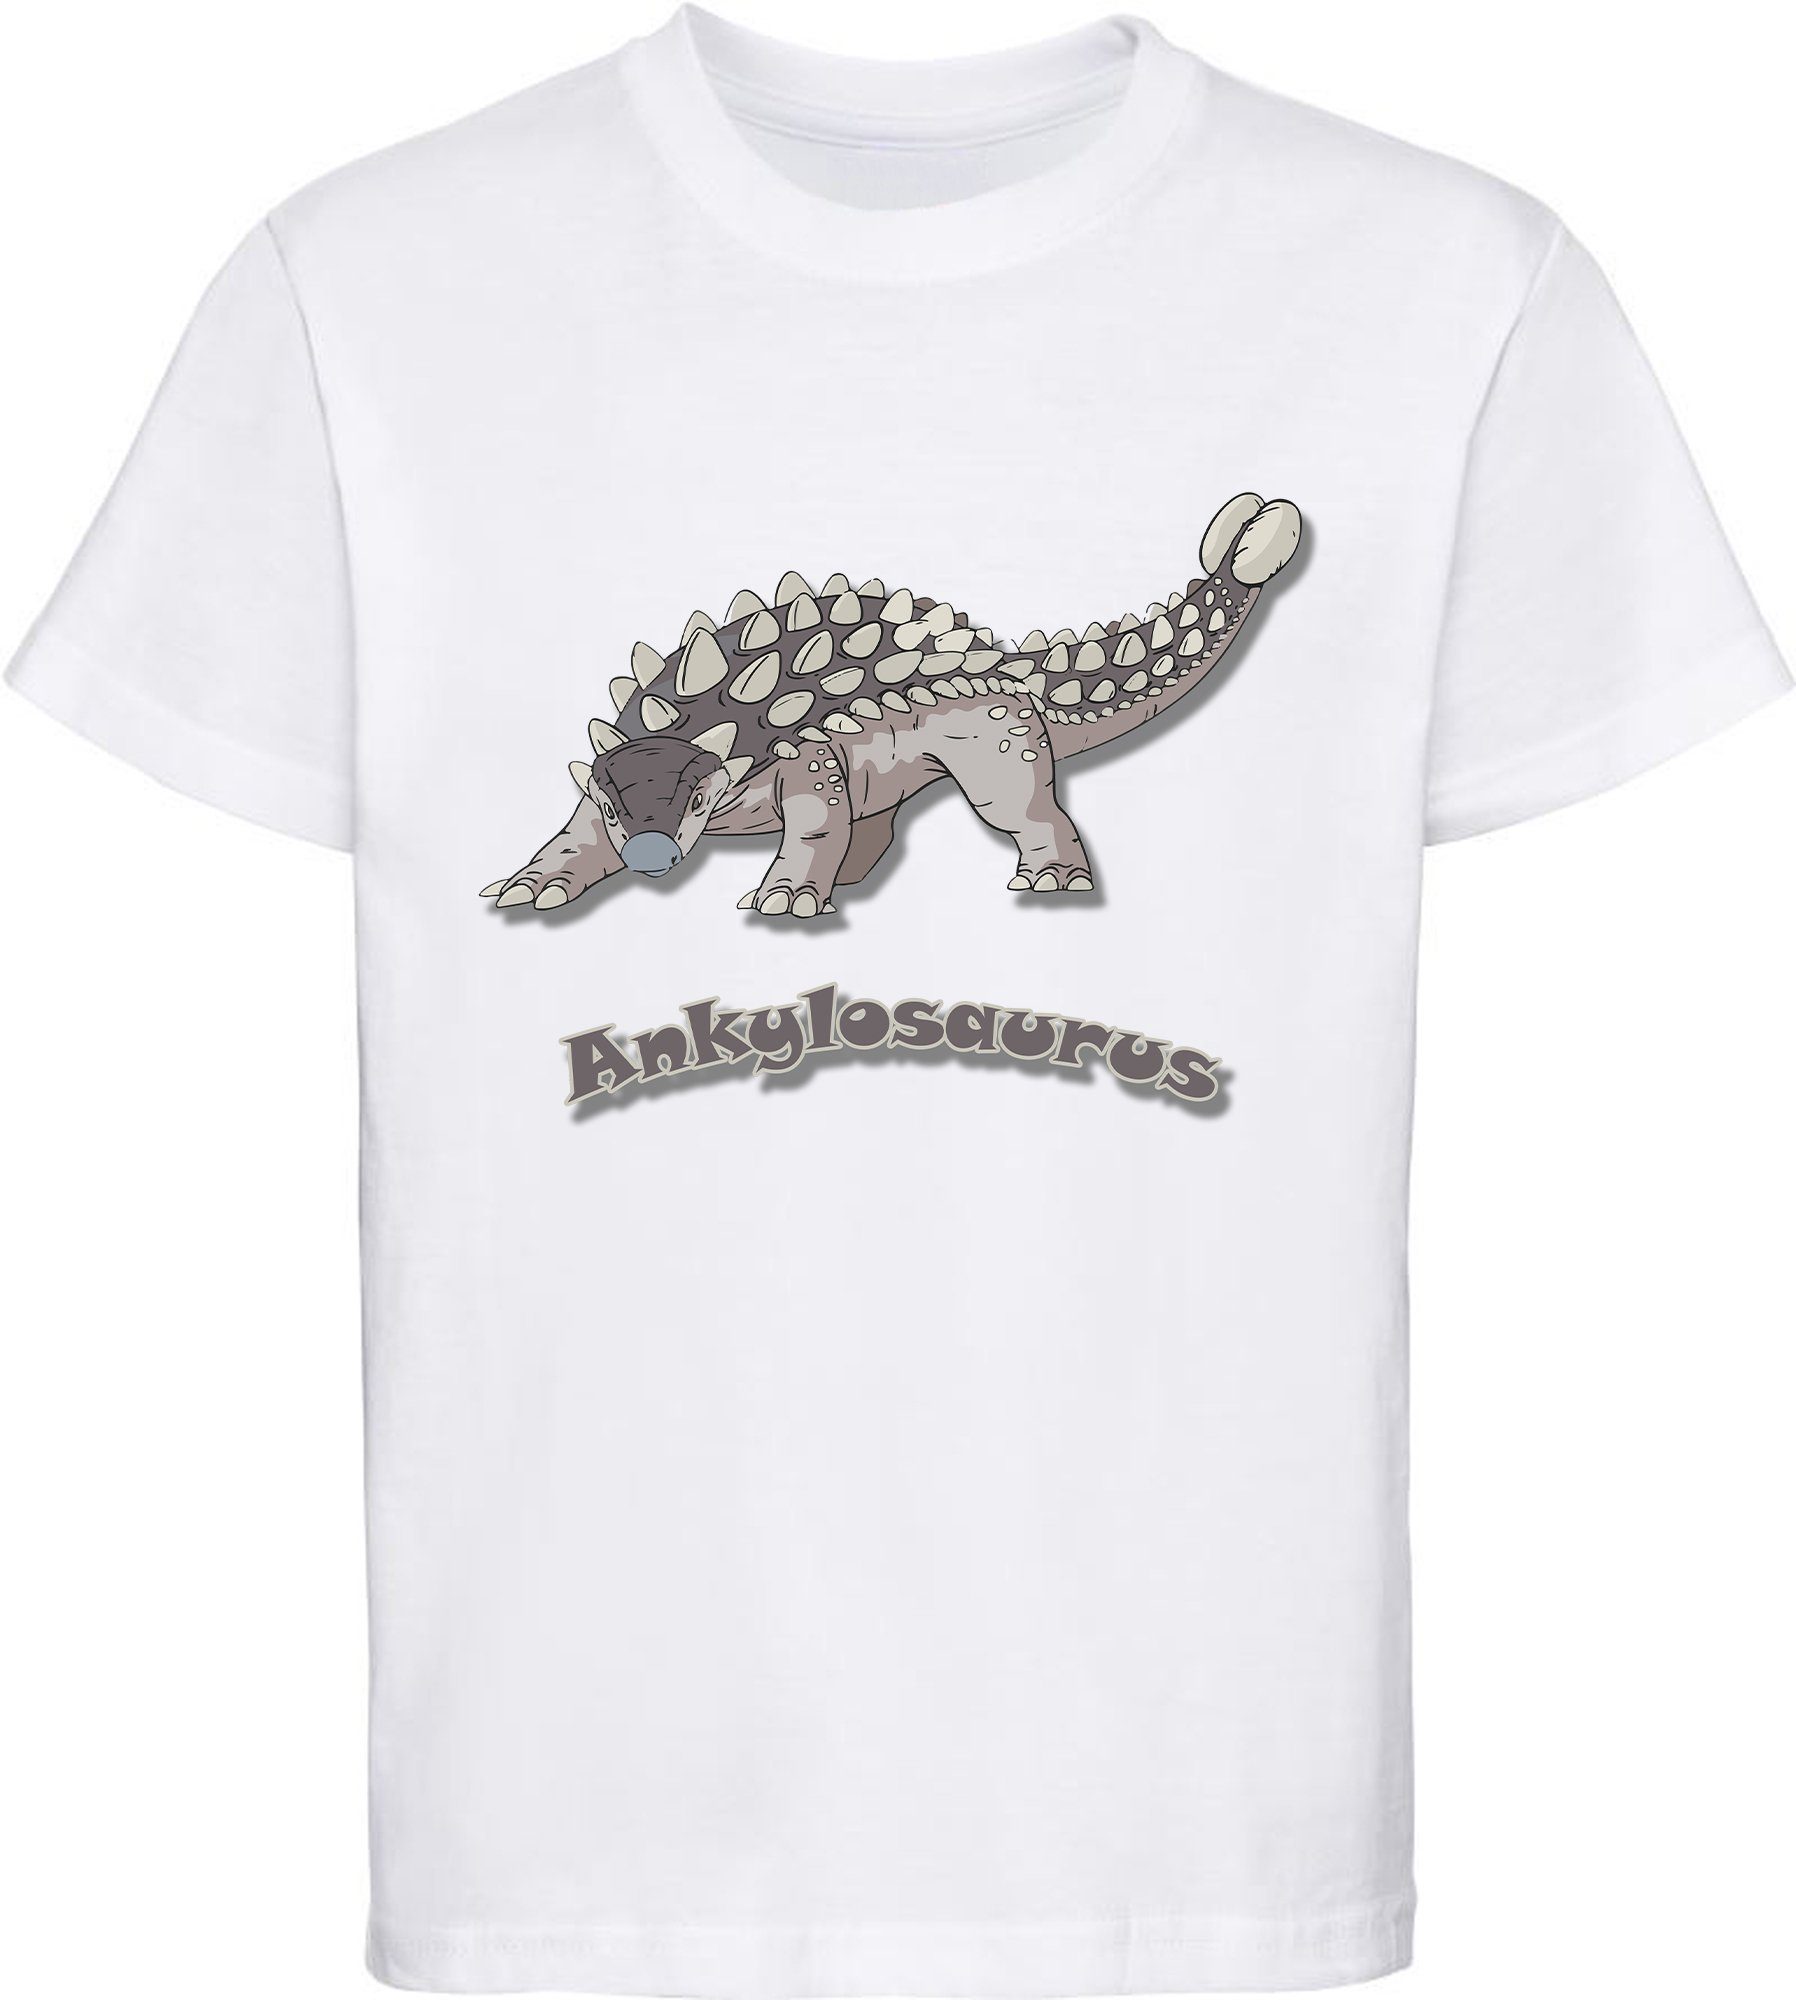 MyDesign24 Print-Shirt bedrucktes weiß, Kinder rot, weiss Aufdruck, Dino i63 T-Shirt mit Ankylosaurus mit 100% blau, schwarz, Baumwolle